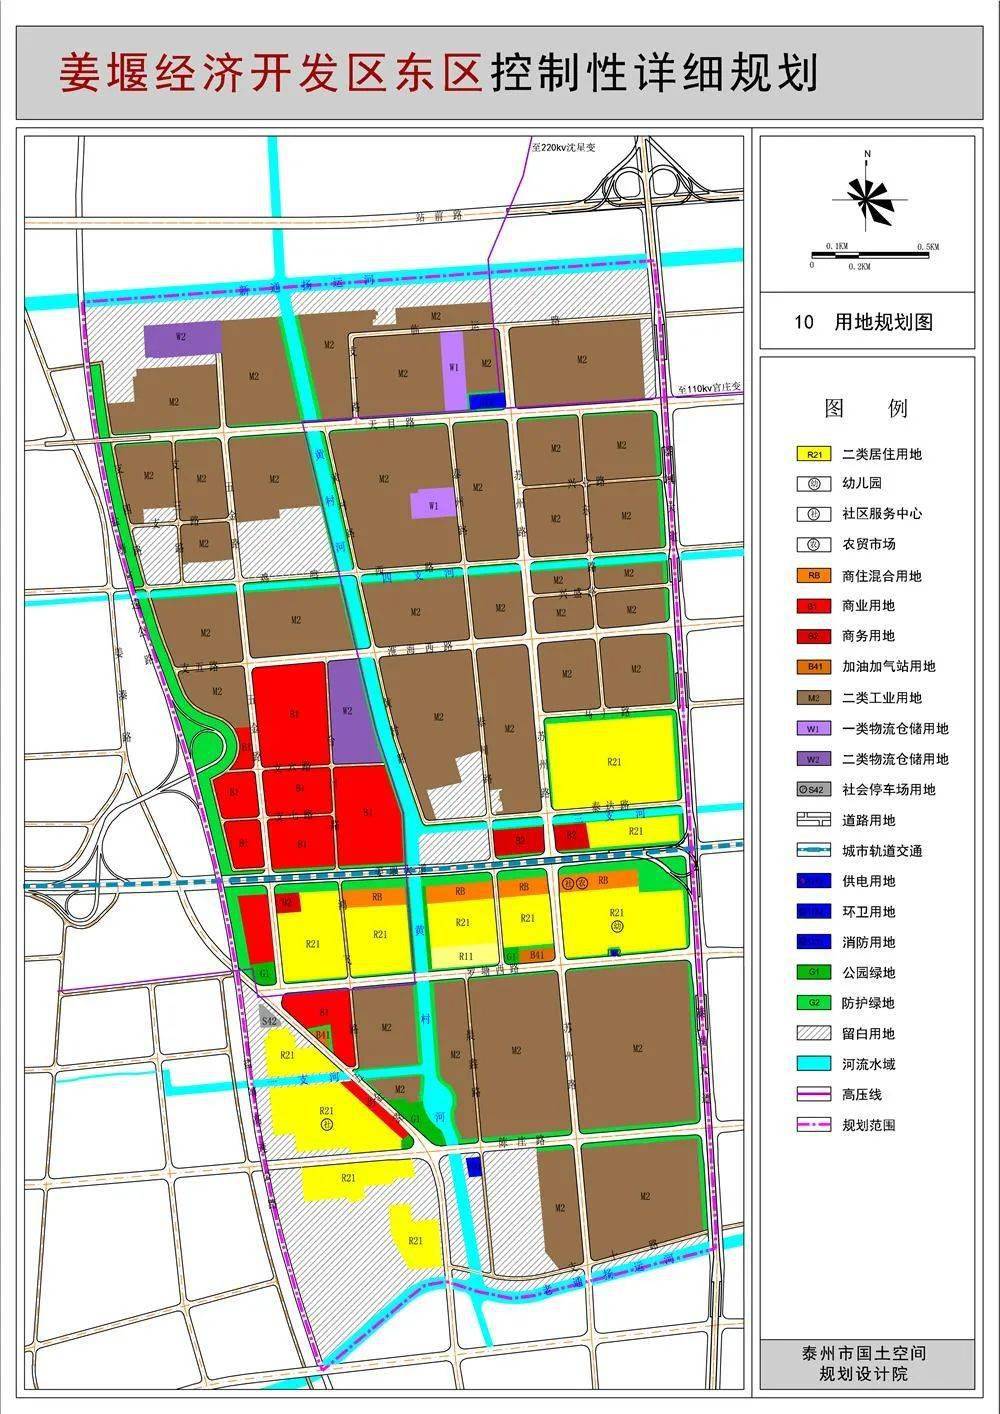 (具体以现场实际为准) 此前,市自然资源和规划局对姜堰经济开发区东区